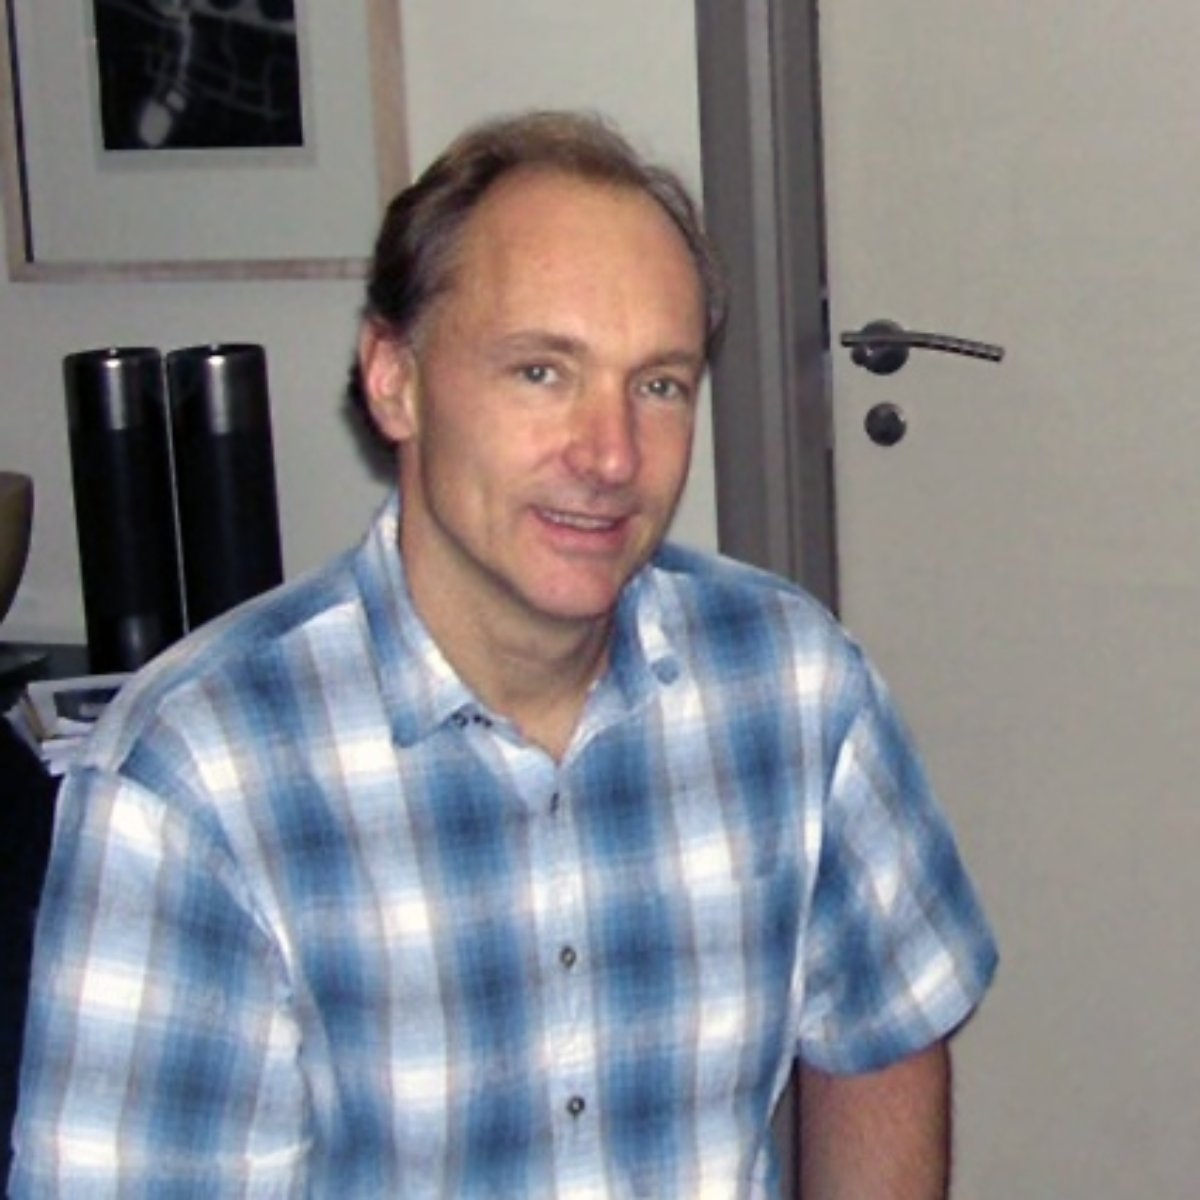 Sir Timothy John Berners-Lee (ur. 8 czerwca 1955 w Londynie) – brytyjski fizyk i programista, współtwórca i jeden z pionierów usługi WWW, jednej z najpopularniejszych usług internetowych. W 1994 roku został przewodniczącym W3C